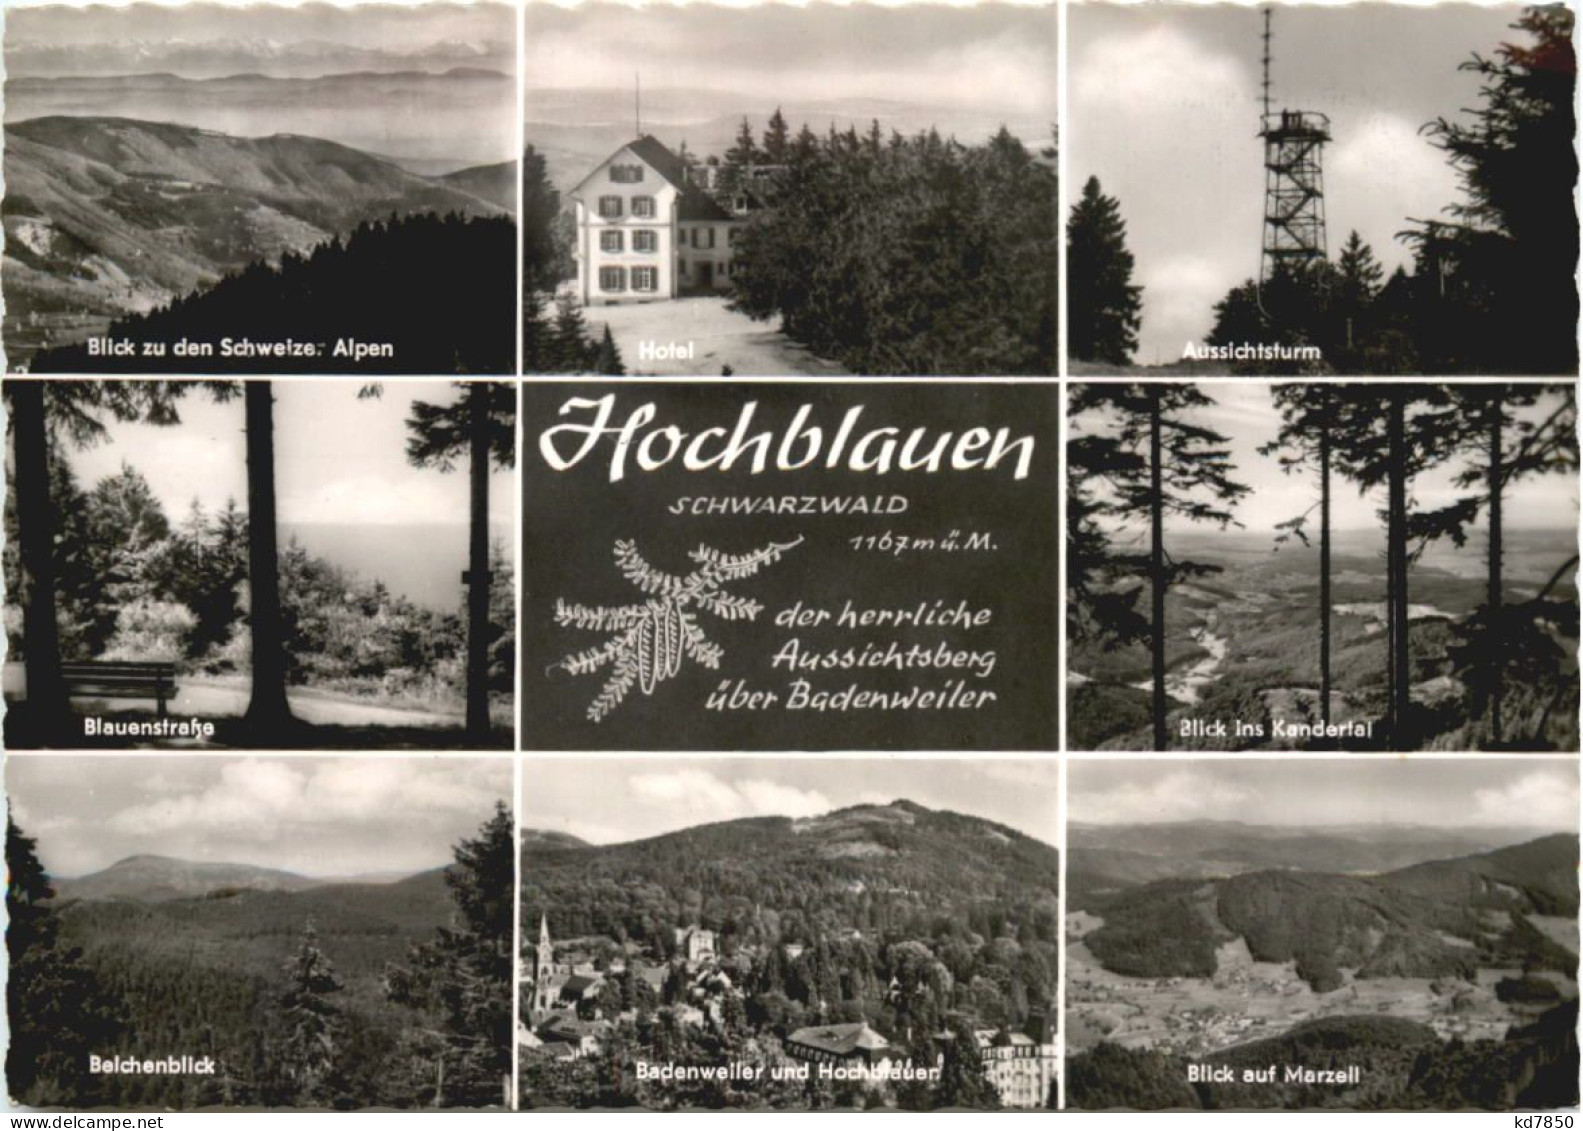 Hochblauen - Loerrach